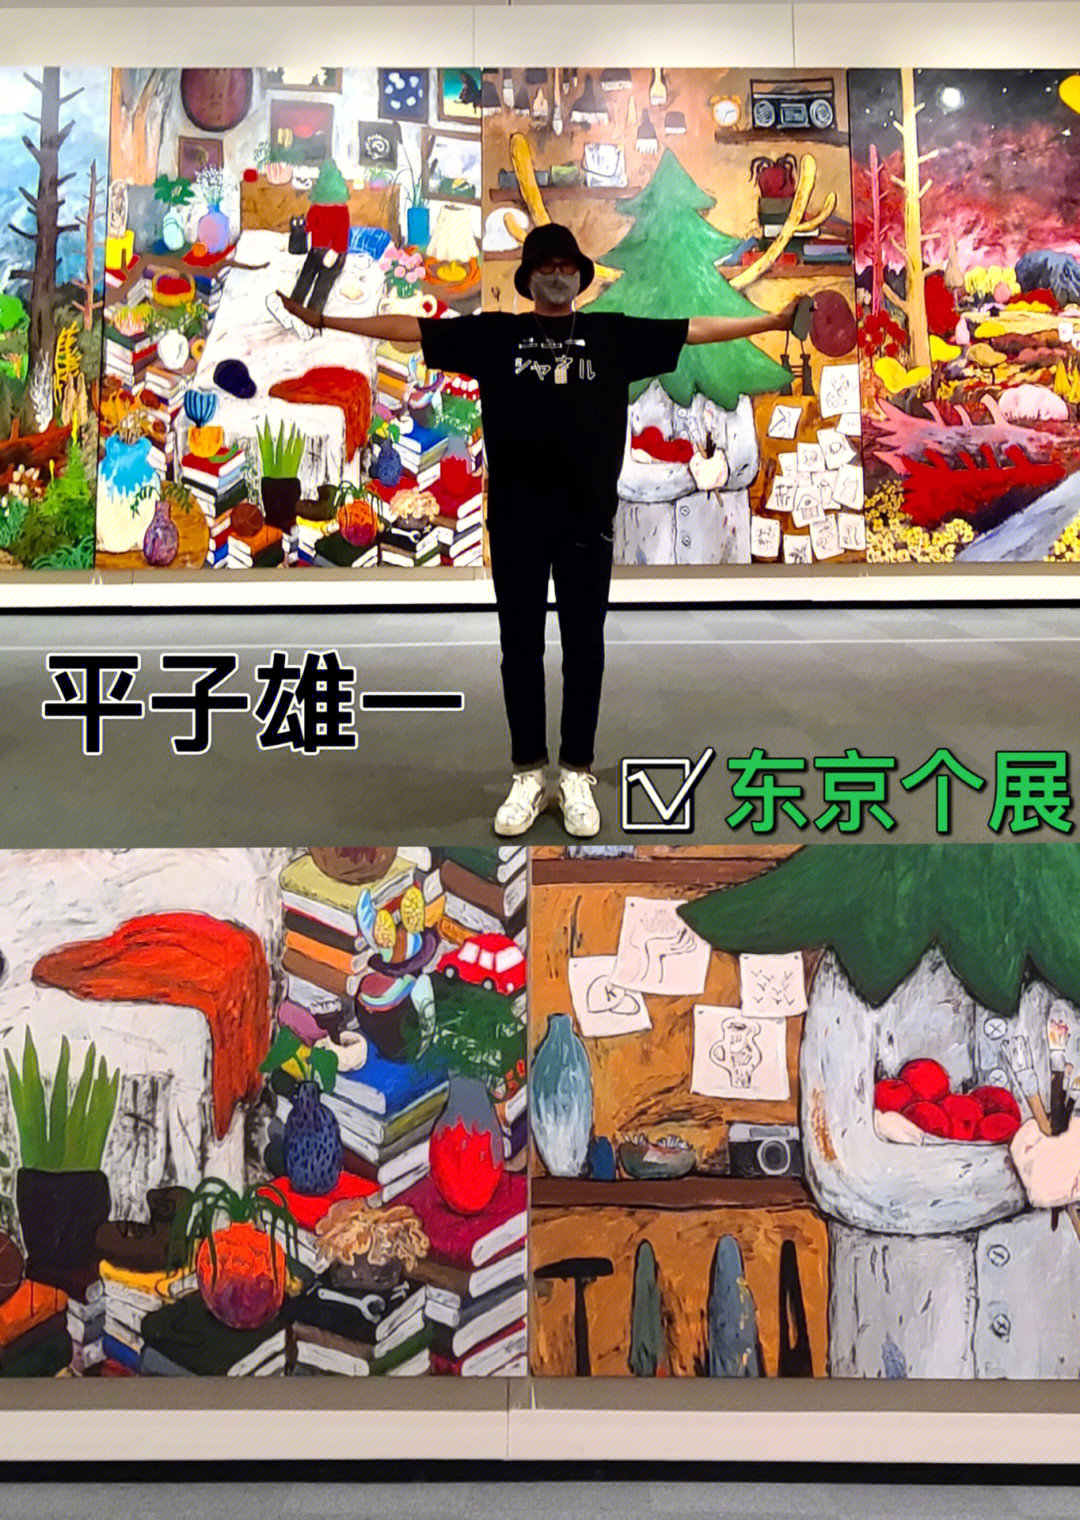 平子雄一也在上海宝龙美术馆出展平子雄一1982年出生于日本的冈山县